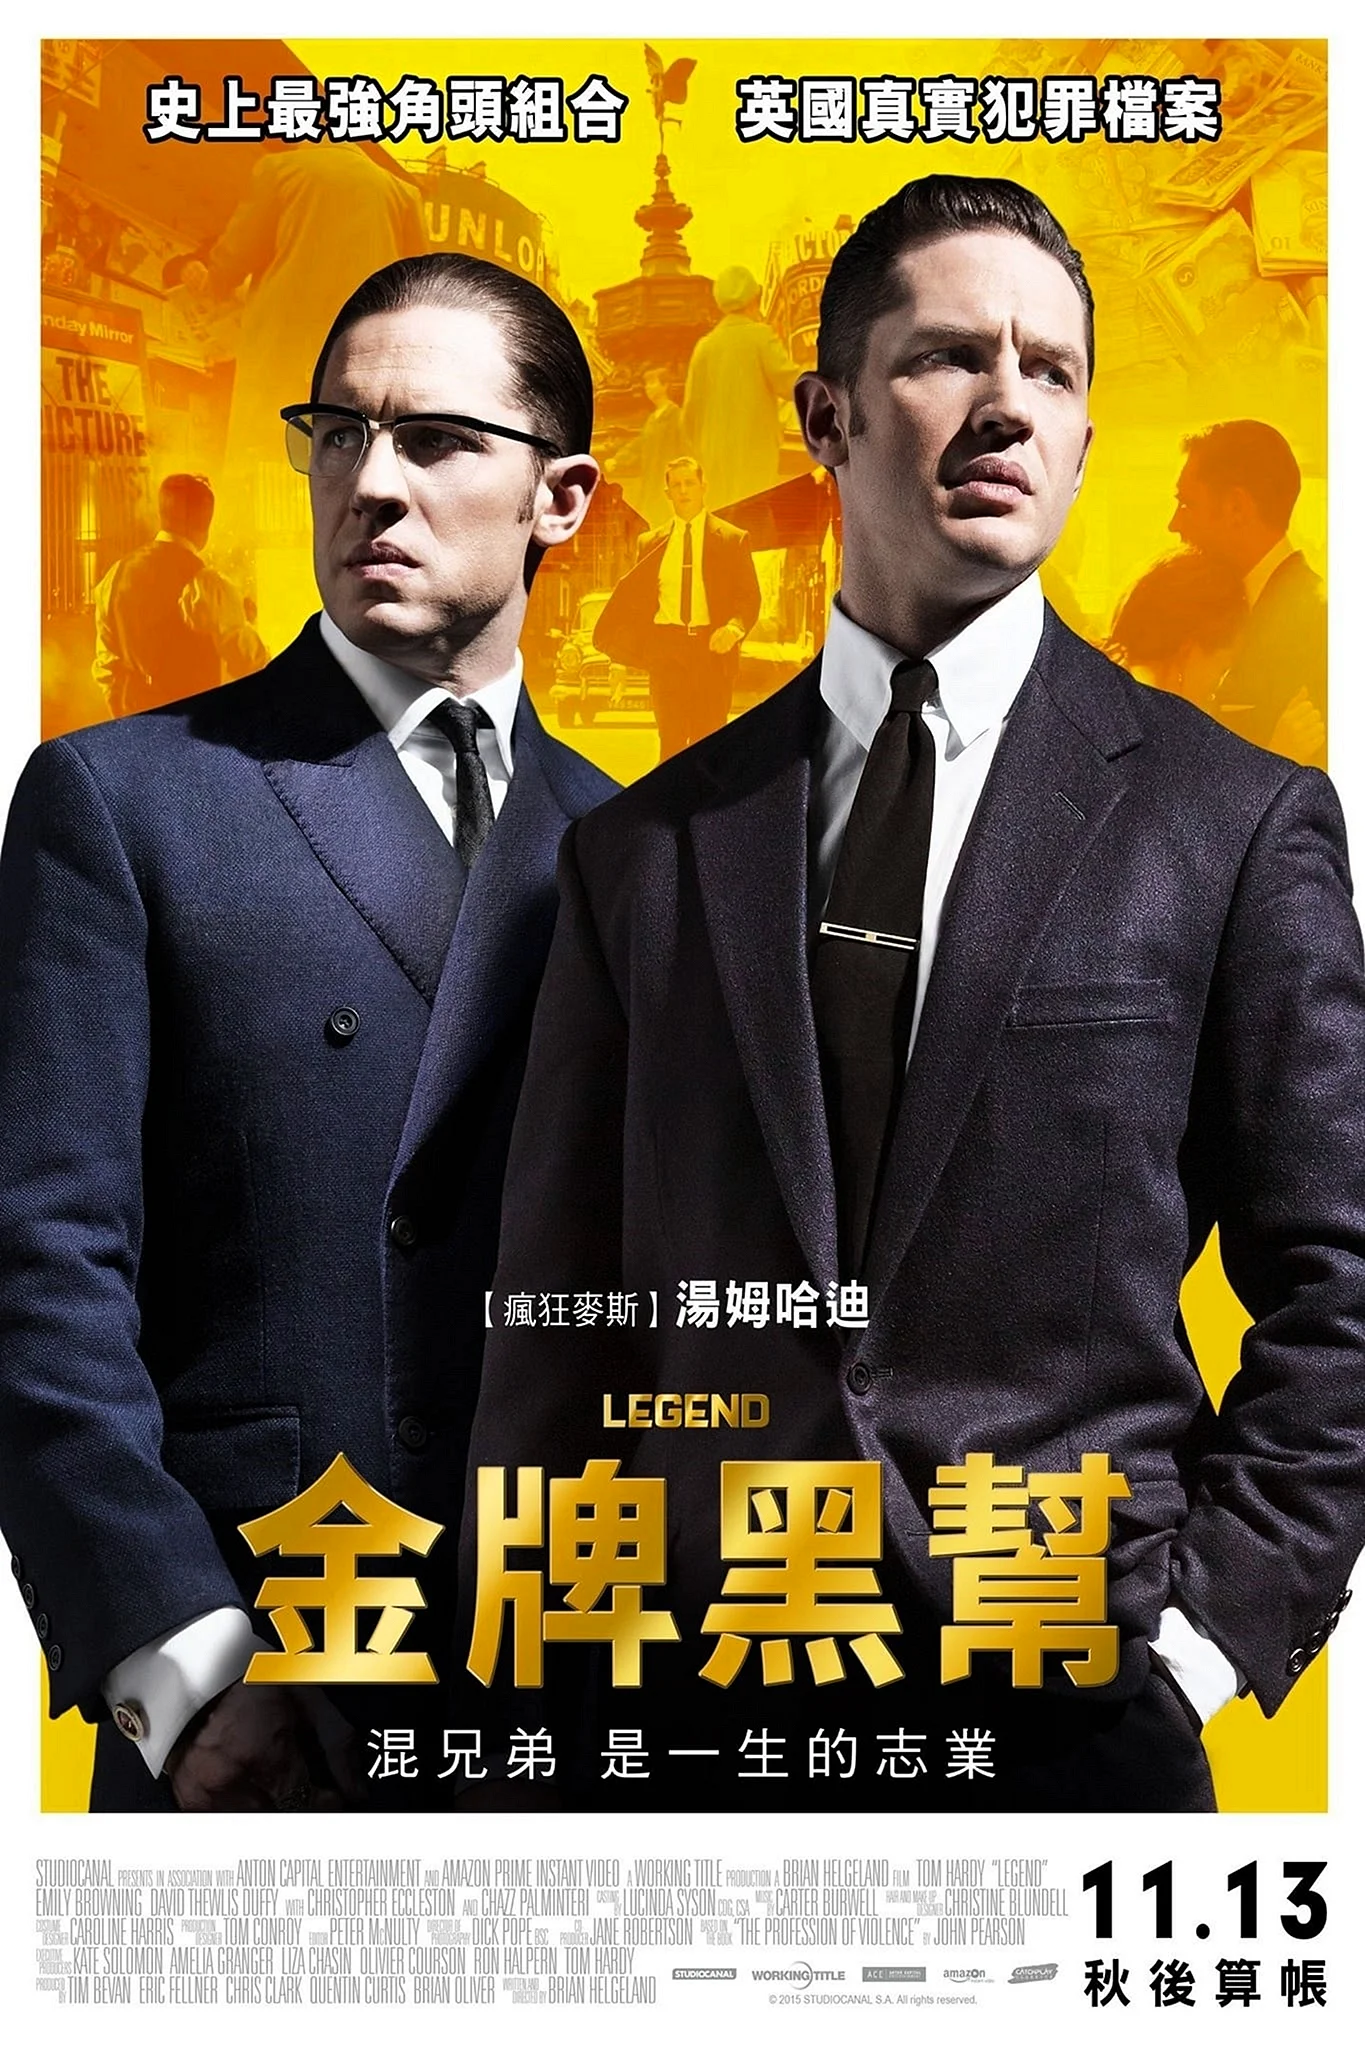 Легенда / Legend (2015) Постер